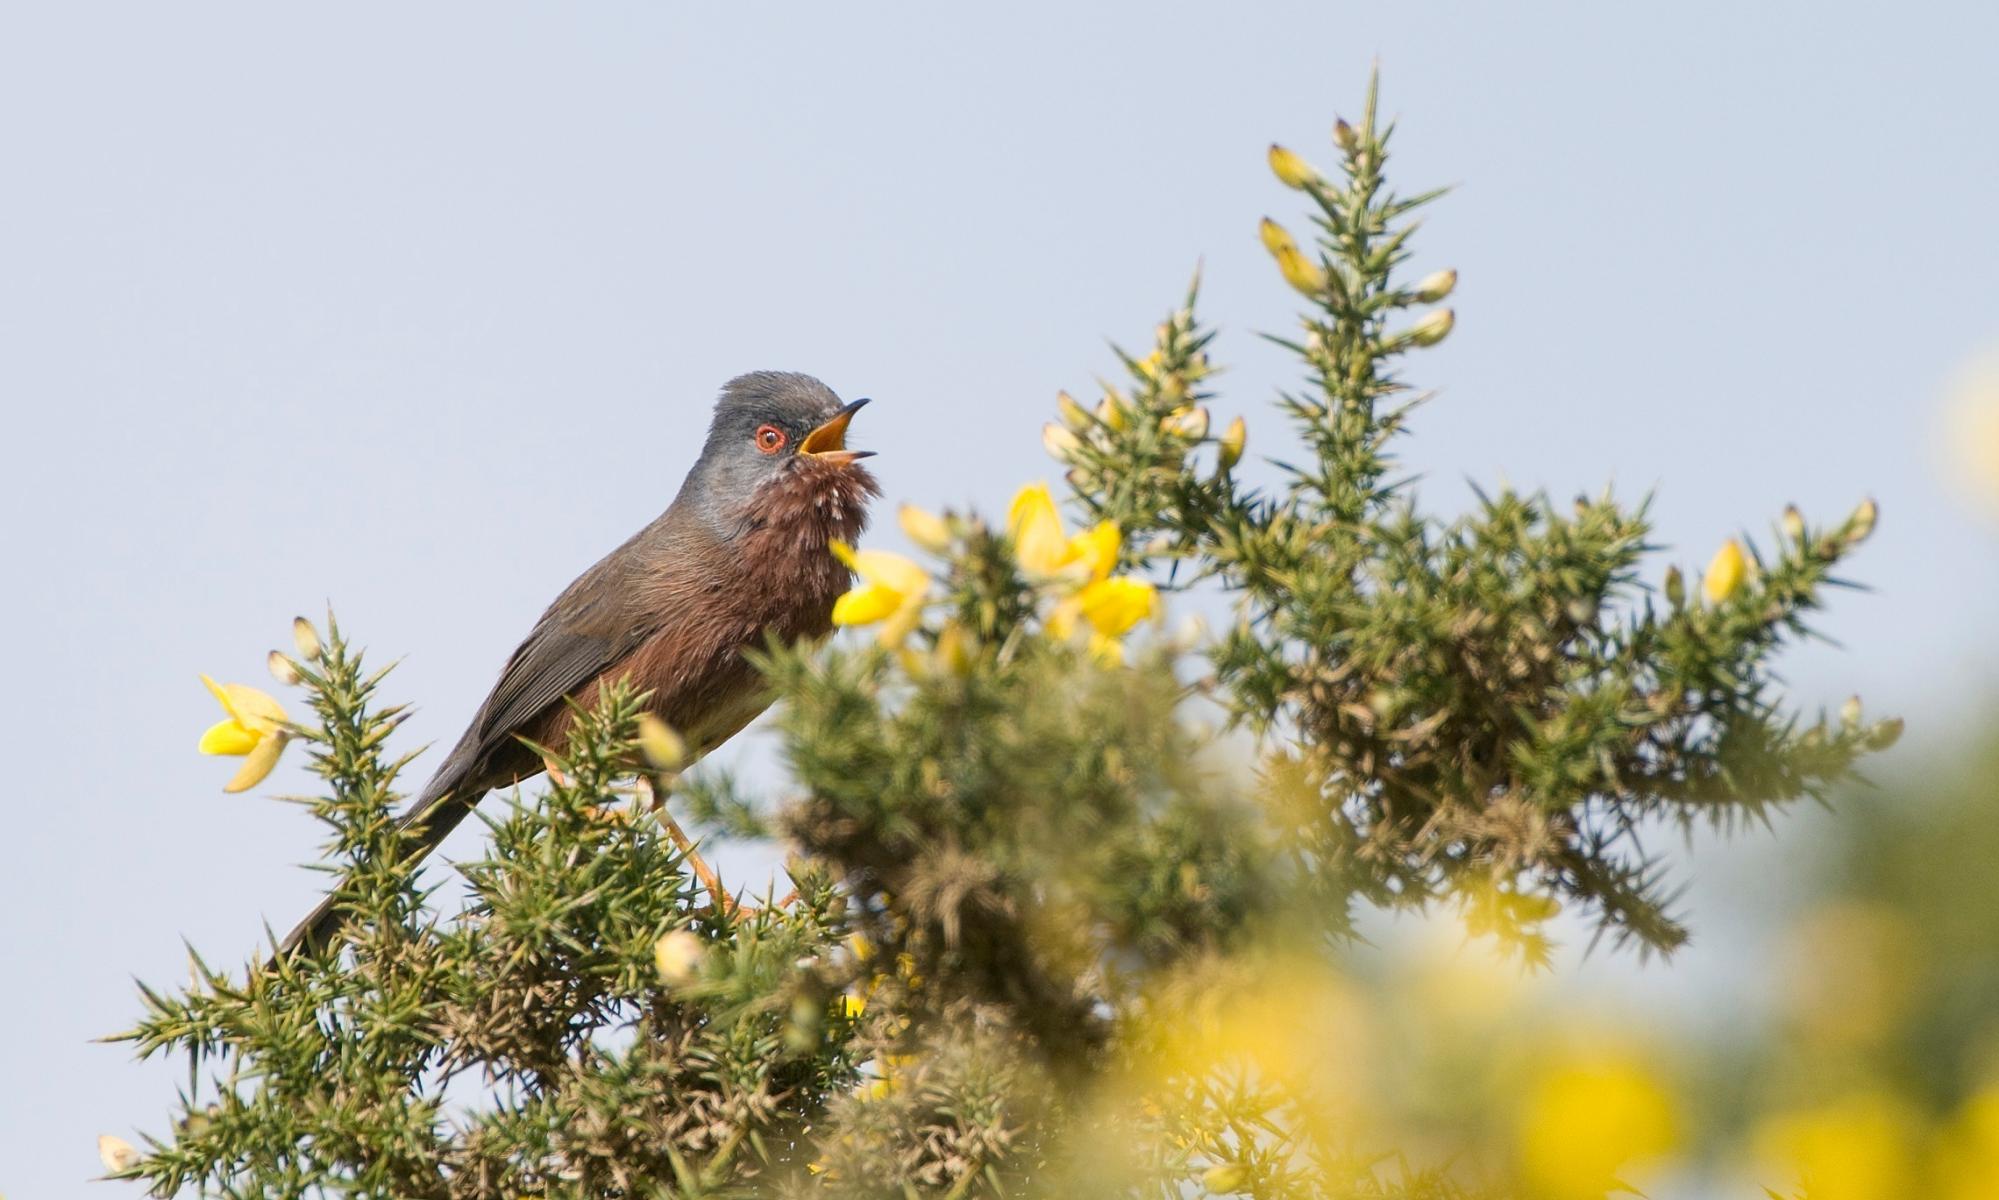 Dartford warbler is welcomed back from near-extinction 